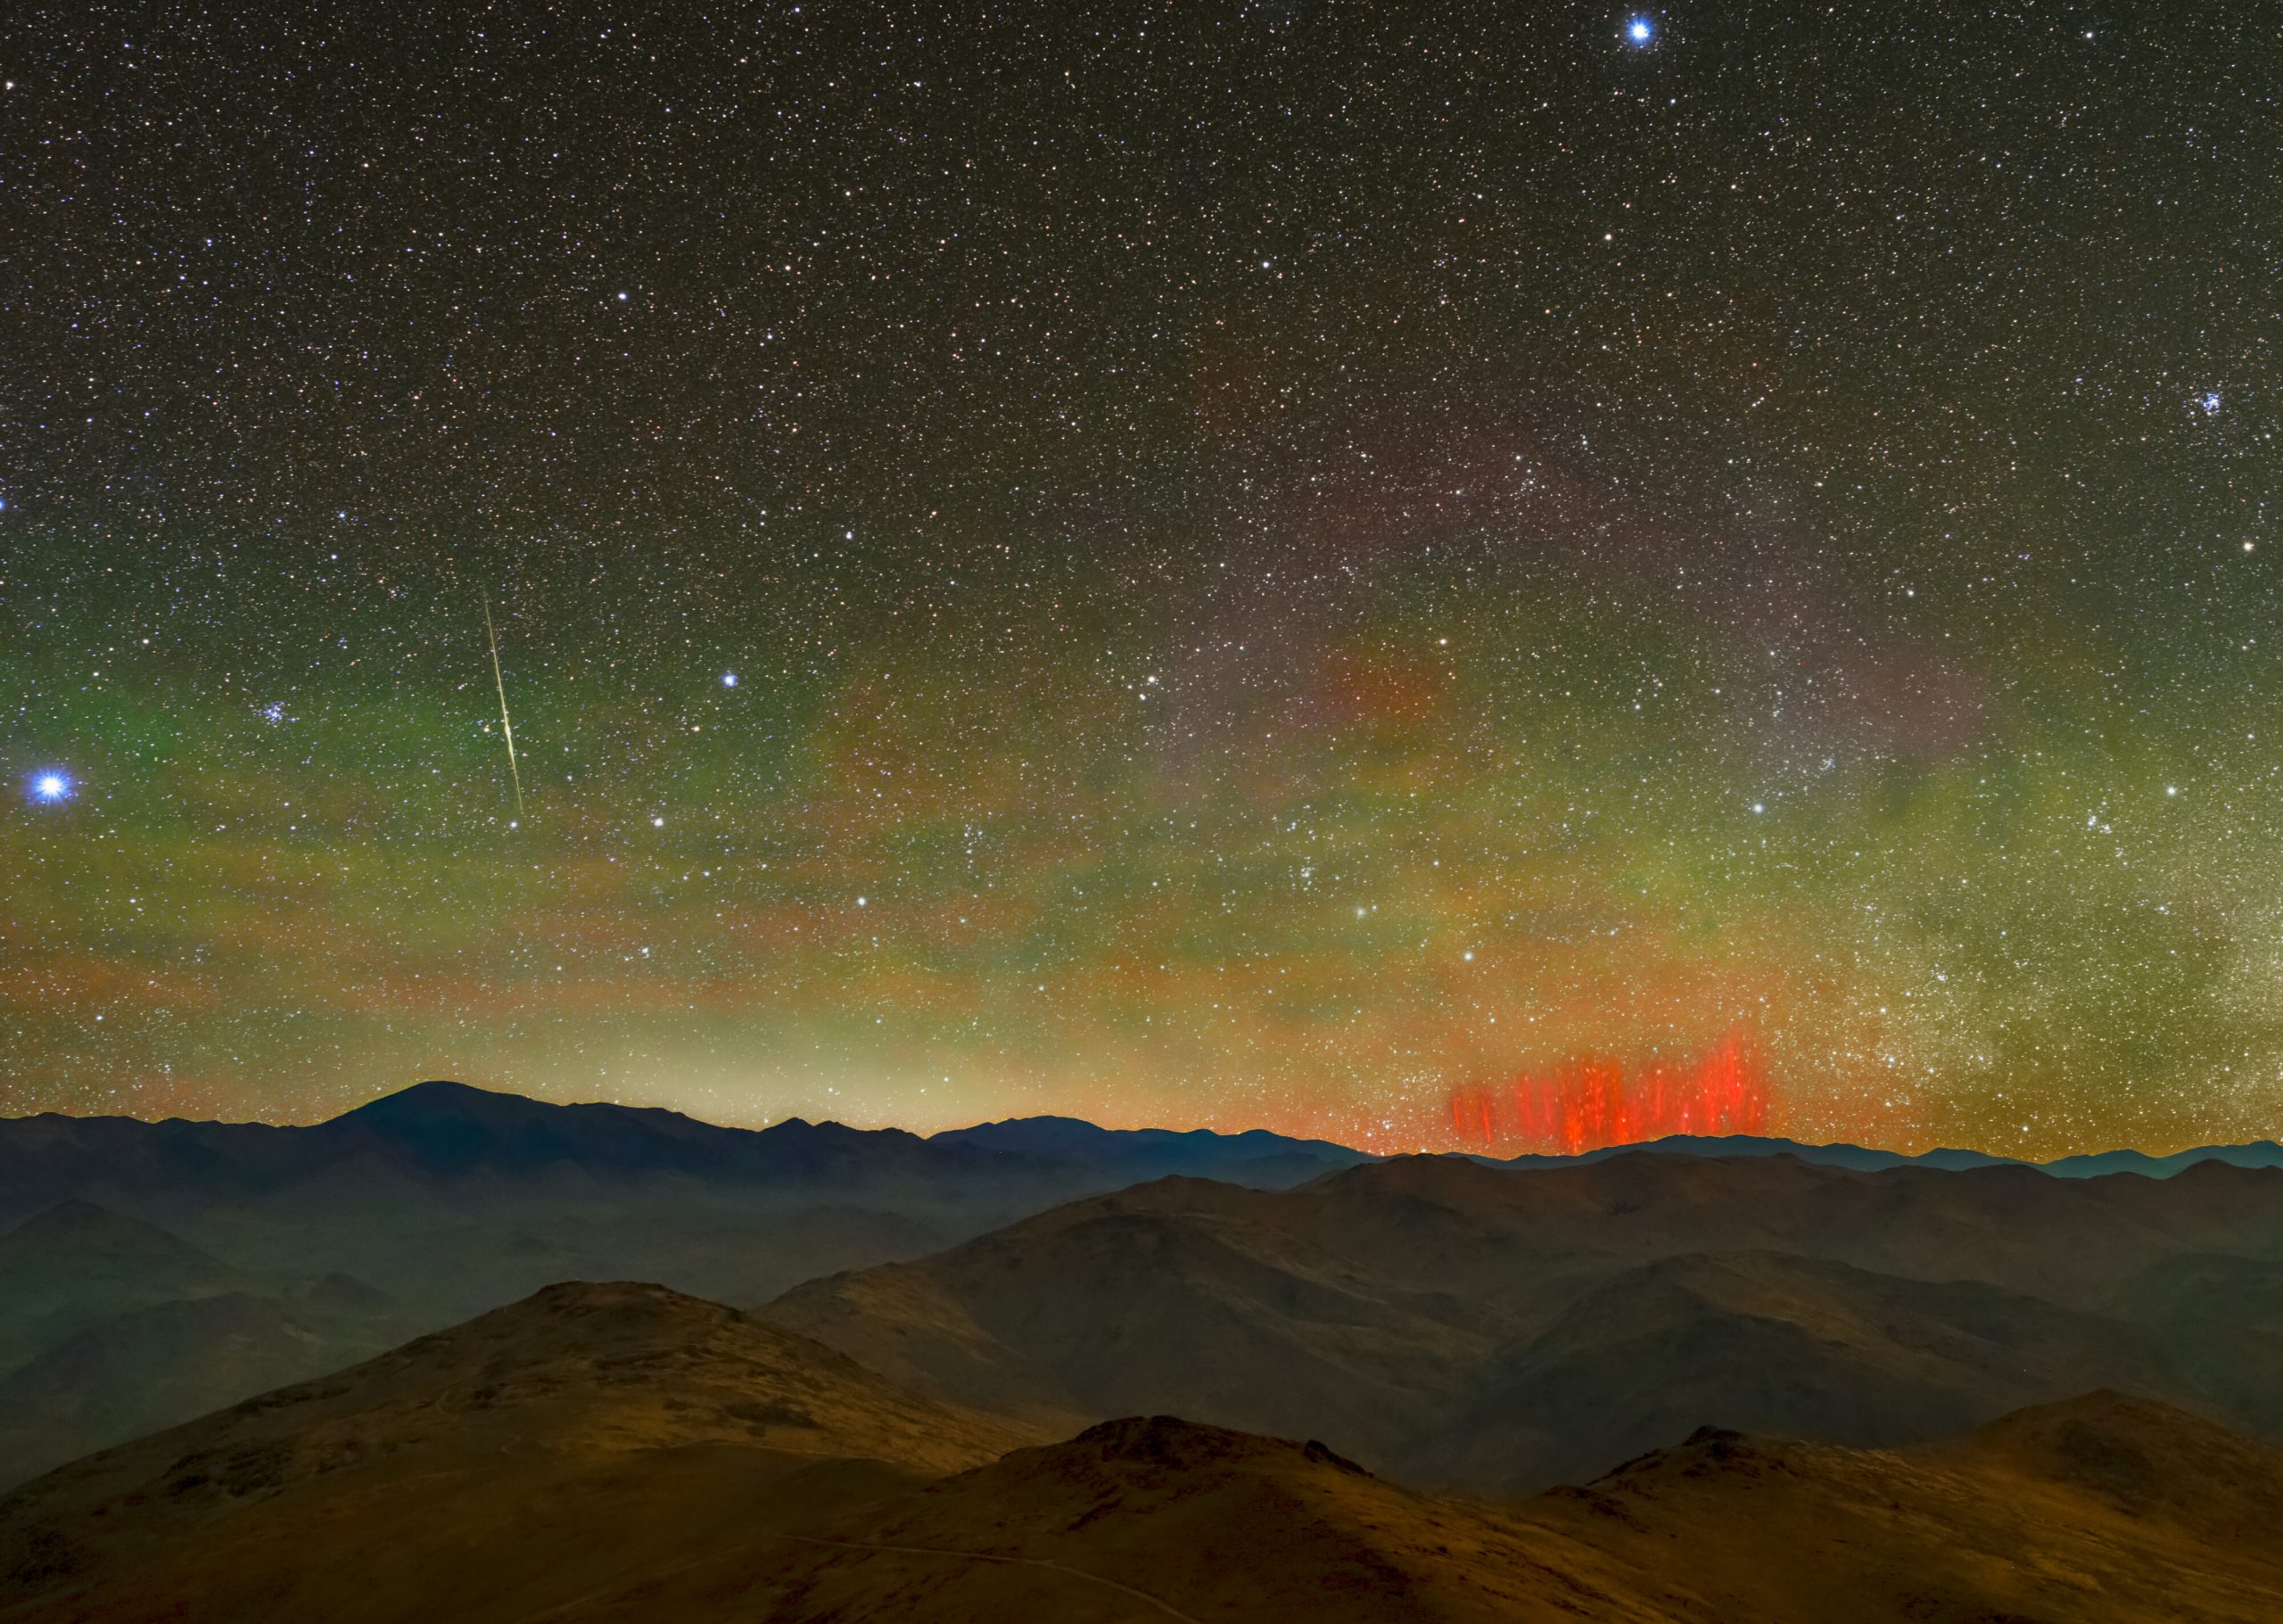 A photograph taken near ESO's La Silla observatory shows a rare phenomenon known as a Red Sprite. Image Credit: Zdenek Bardon/ESO.